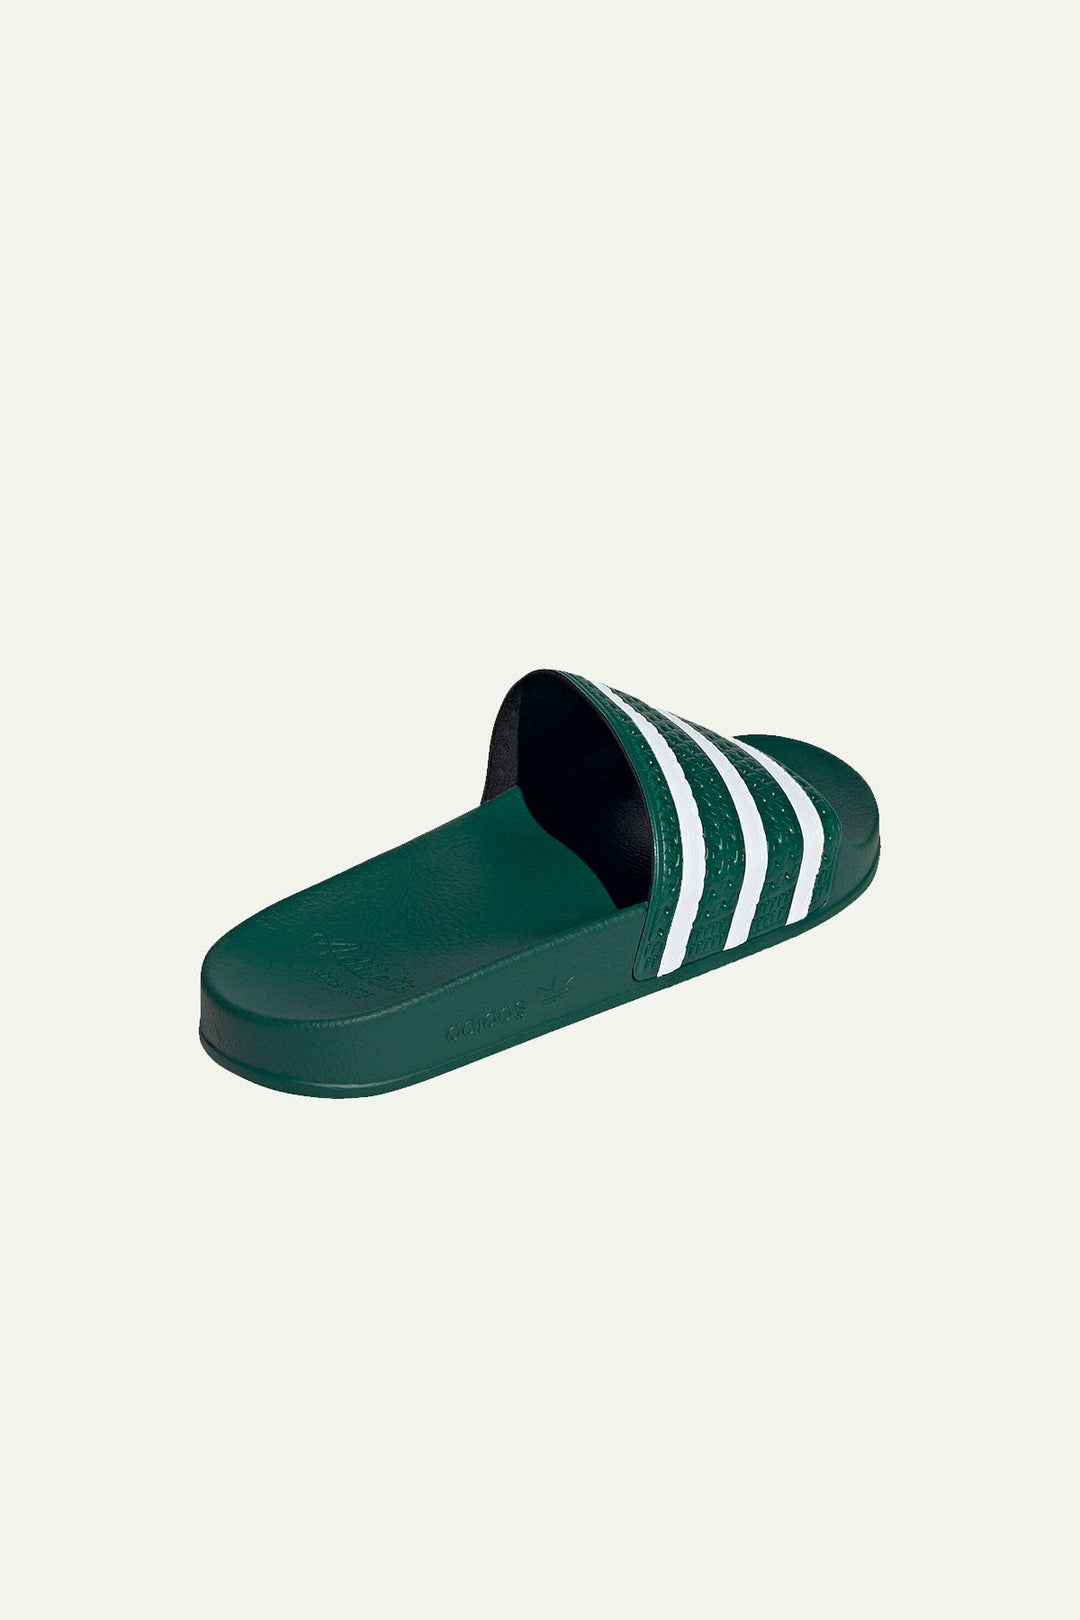 כפכפי סלייד Adilette בצבע ירוק לבן - Adidas